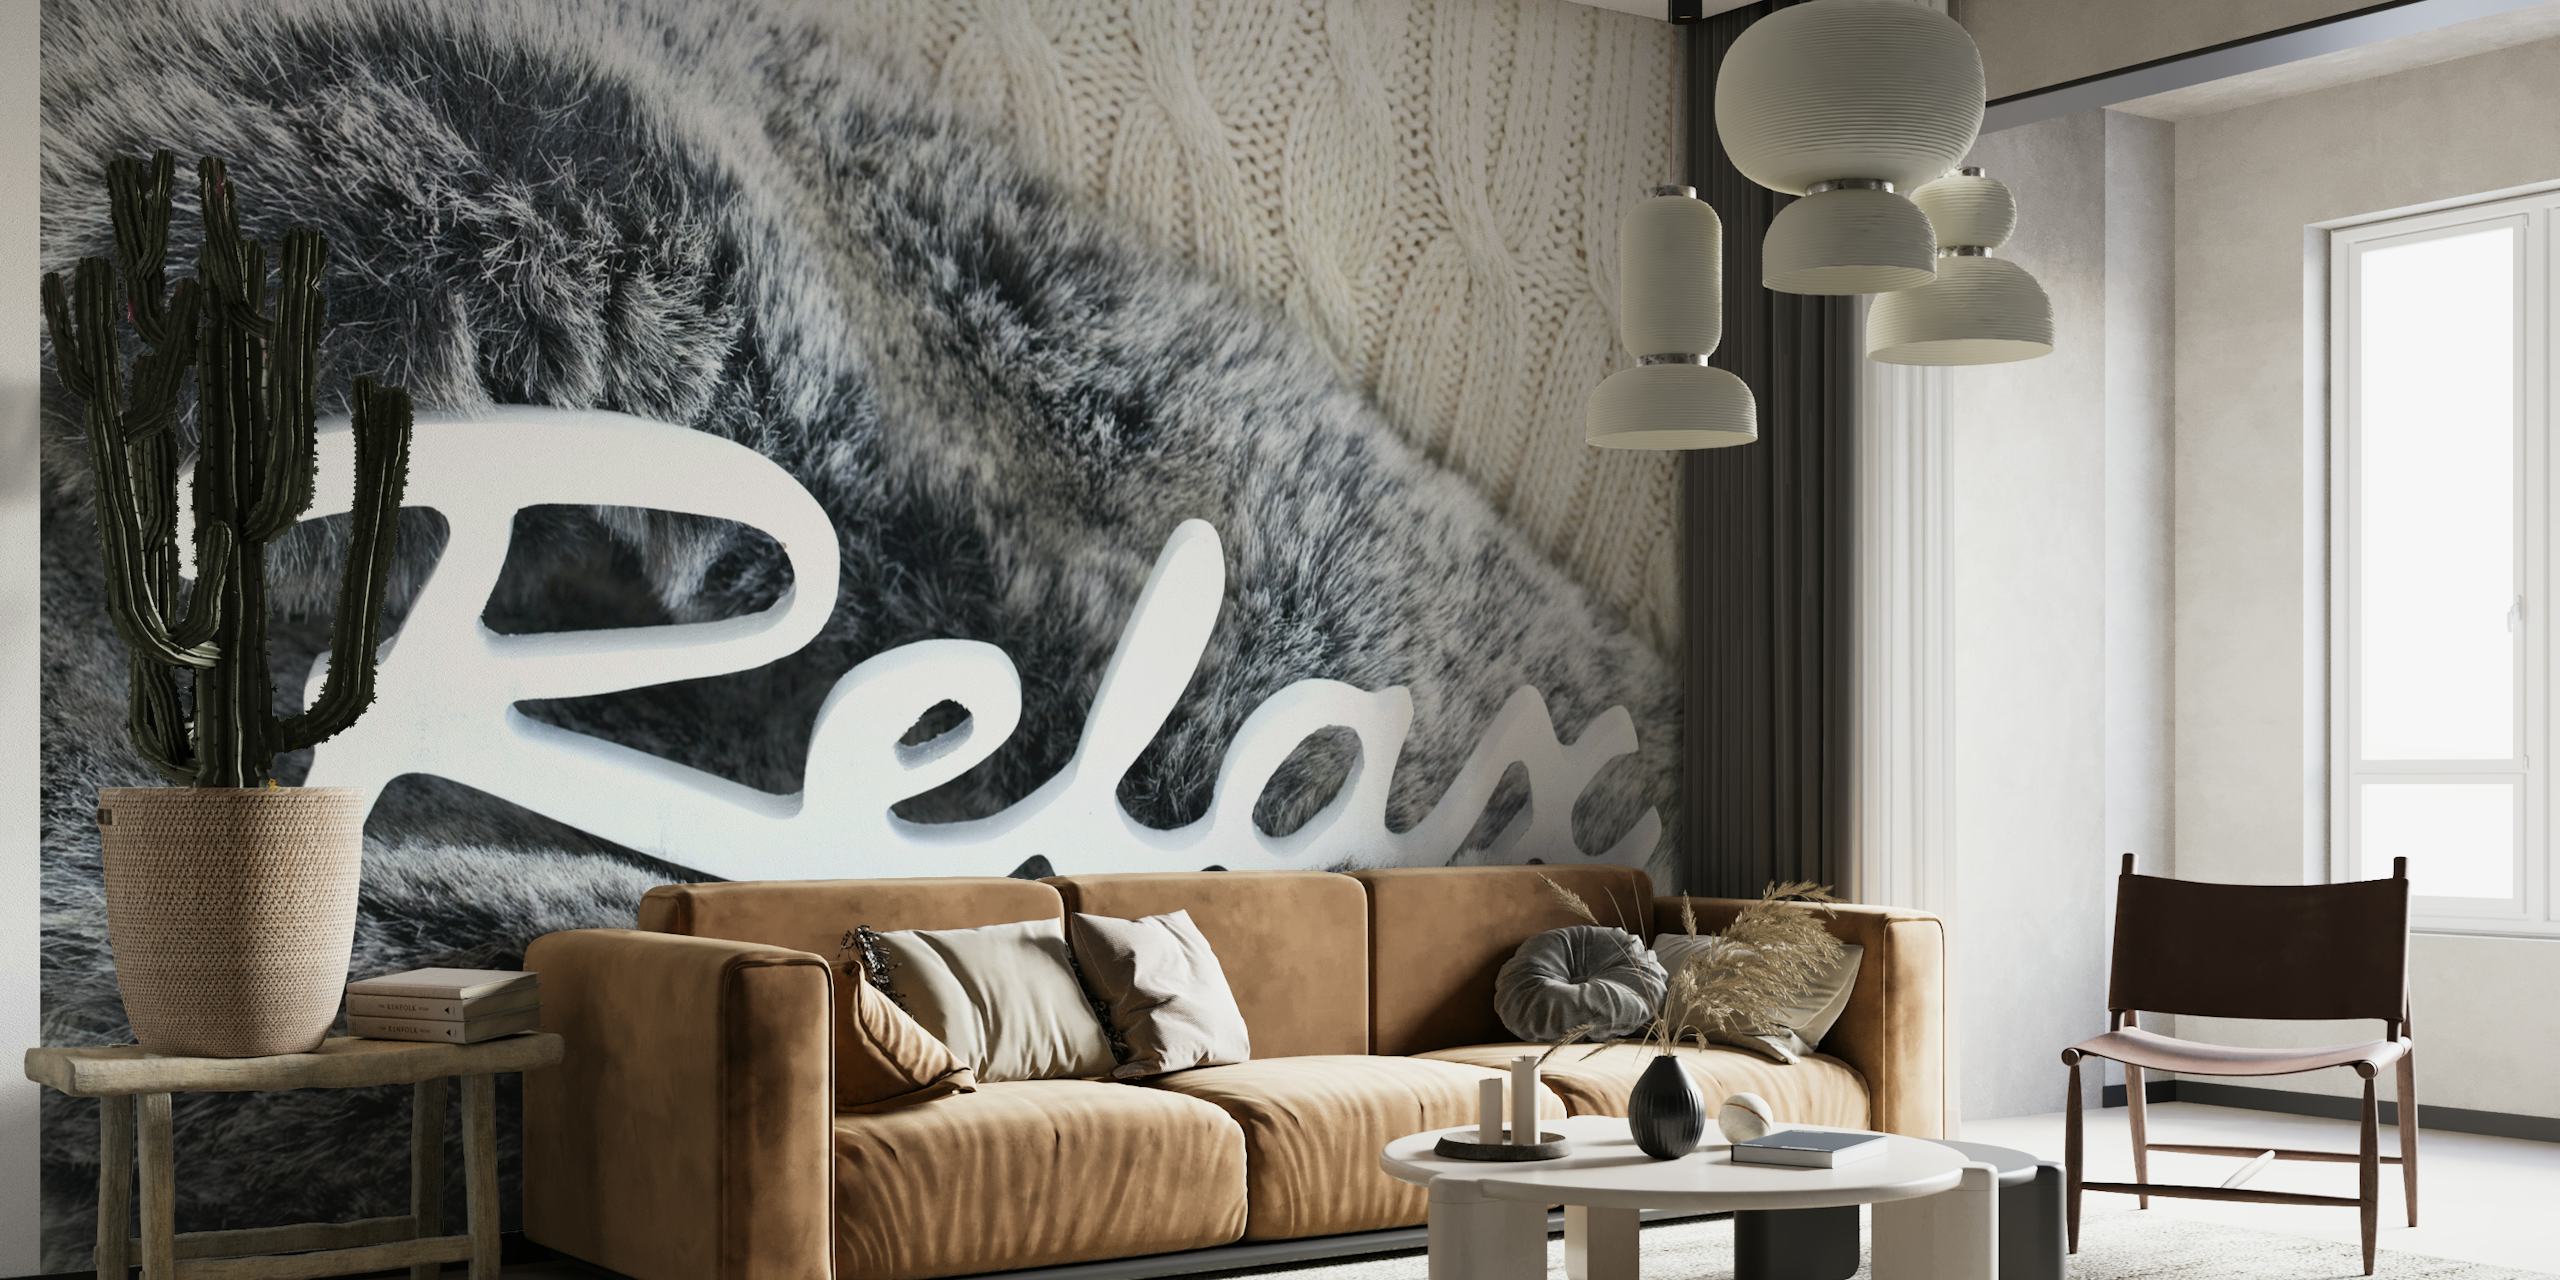 Seinämaalaus simuloidulla turkistekstuurilla ja sanalla "Relax" tyylikkäällä käsikirjoituksella